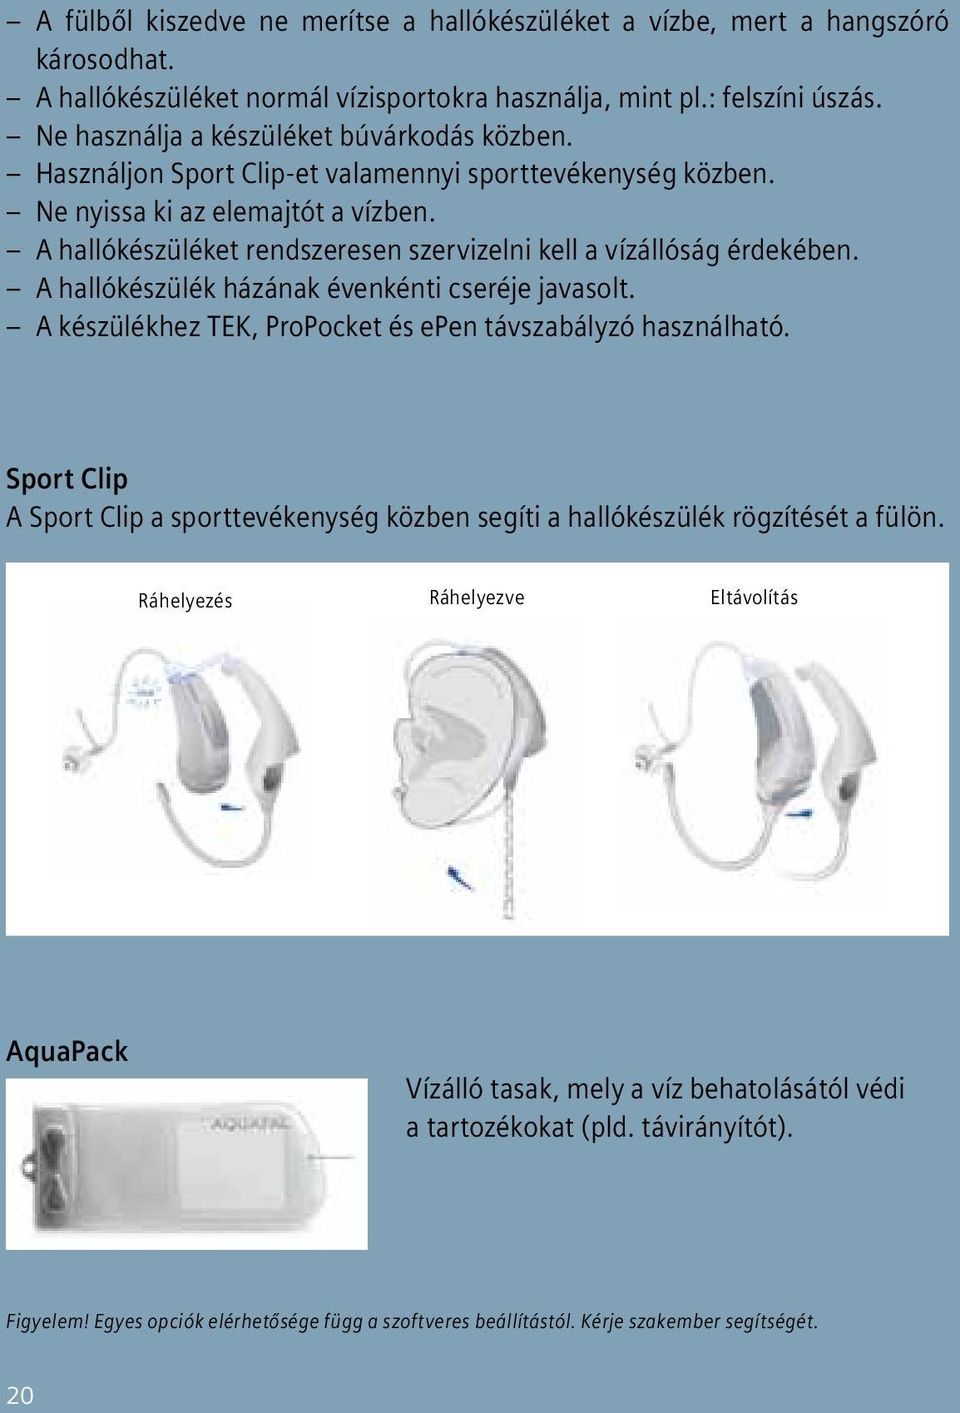 Használati útmutató fülmögötti készülékekhez. - PDF Ingyenes letöltés